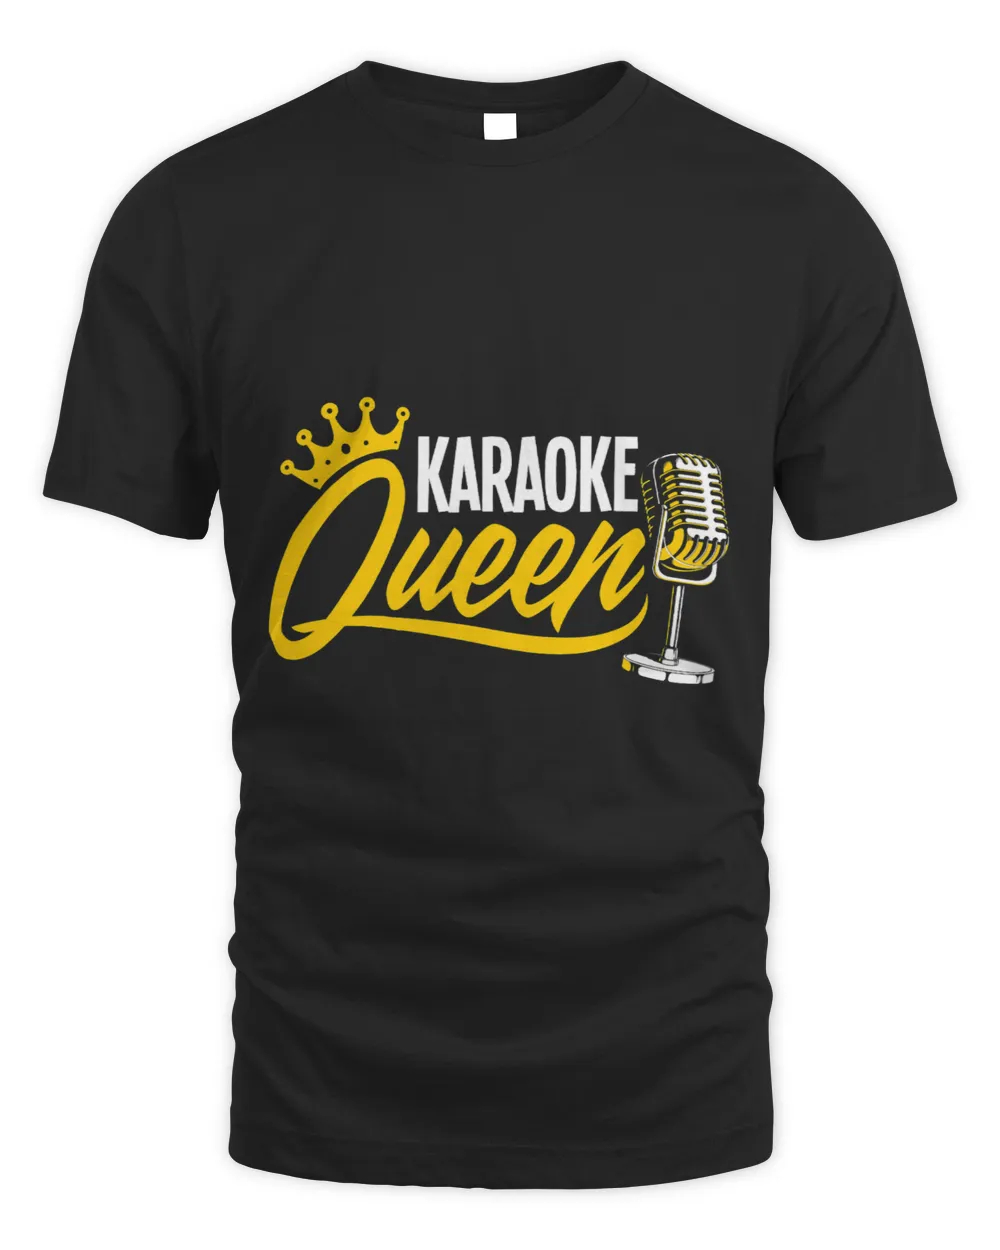 Karoke Queen Womens Singer Music Songs Funny Singing